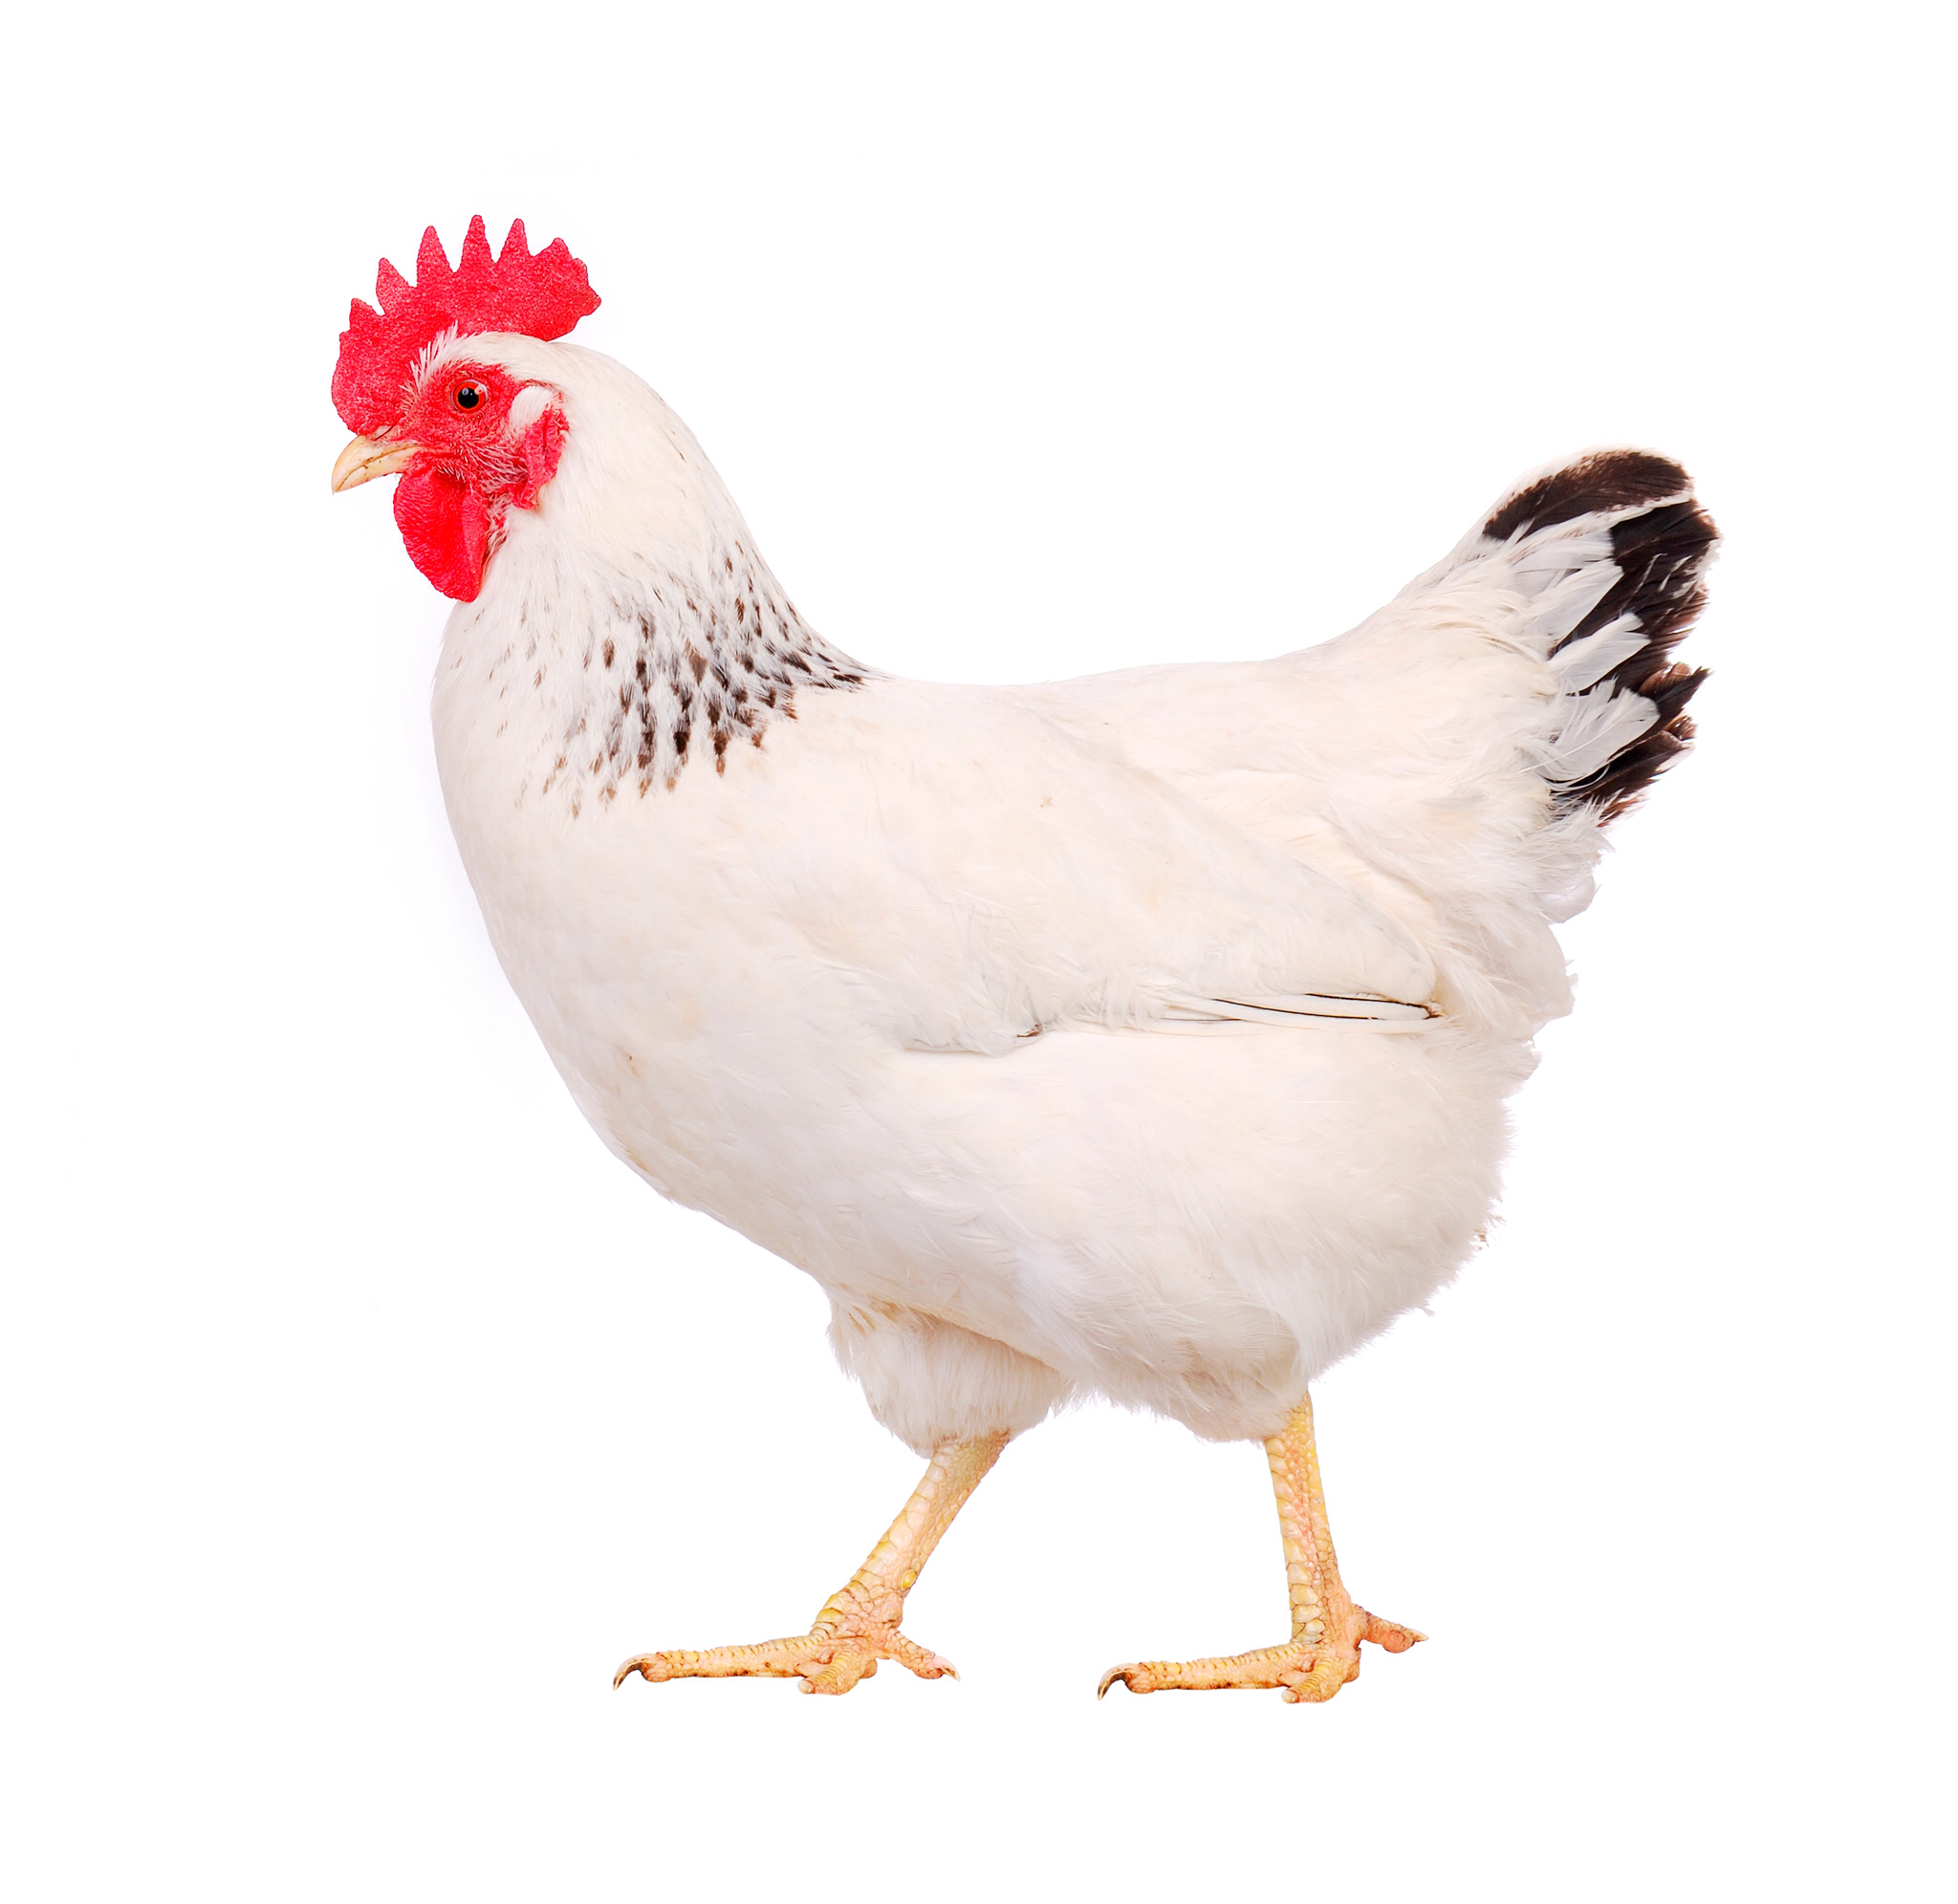 Chicken PNG image - Chicken P